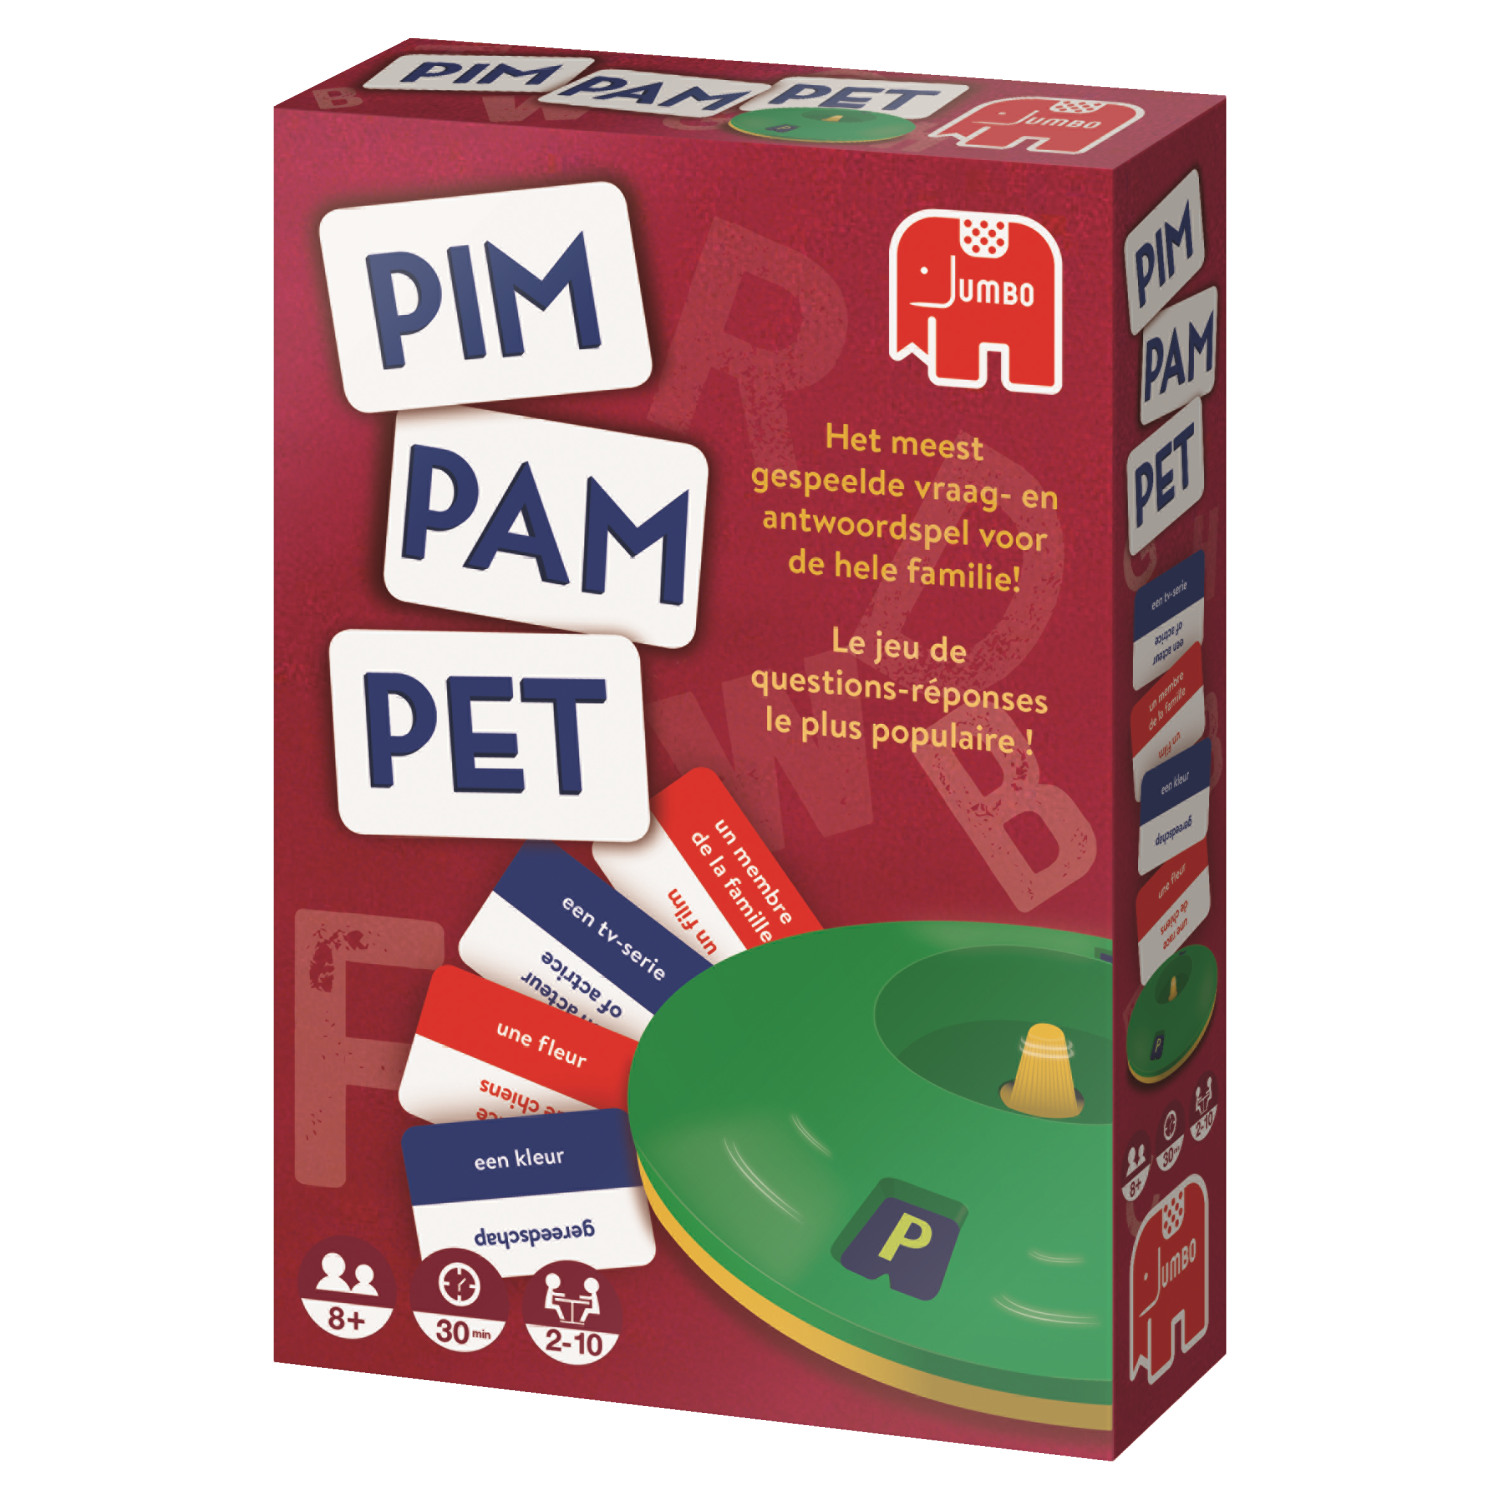 Pim Pam Pet Original - product image - Jumboplay.com